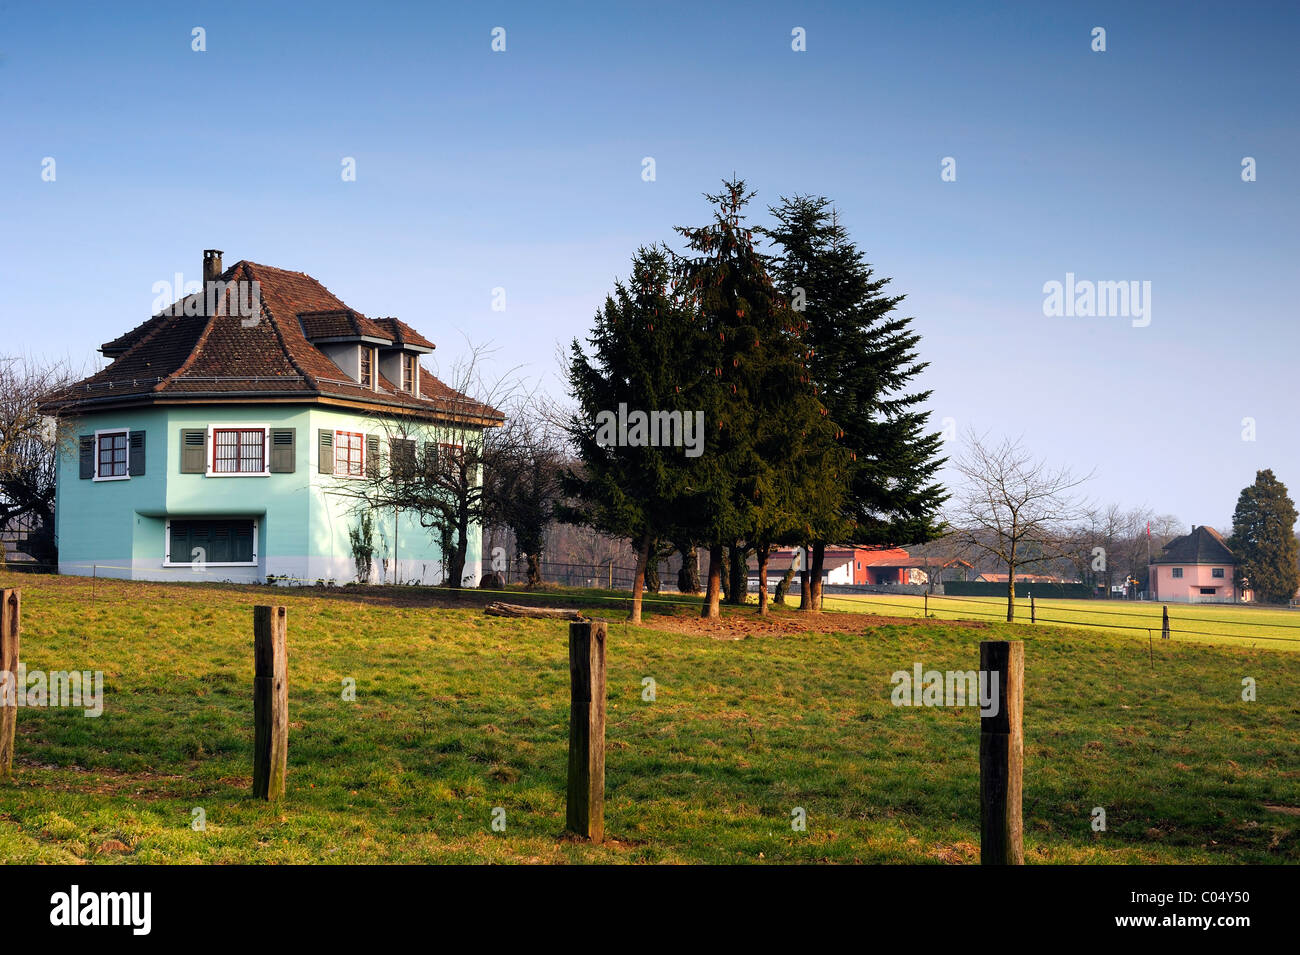 Villa Verte" und "Villa Rose" - befestigte 2 Schweizer Geschützstellungen  getarnt als auf dem Land. Bestandteil einer WW2 Verteidigungslinie  Stockfotografie - Alamy